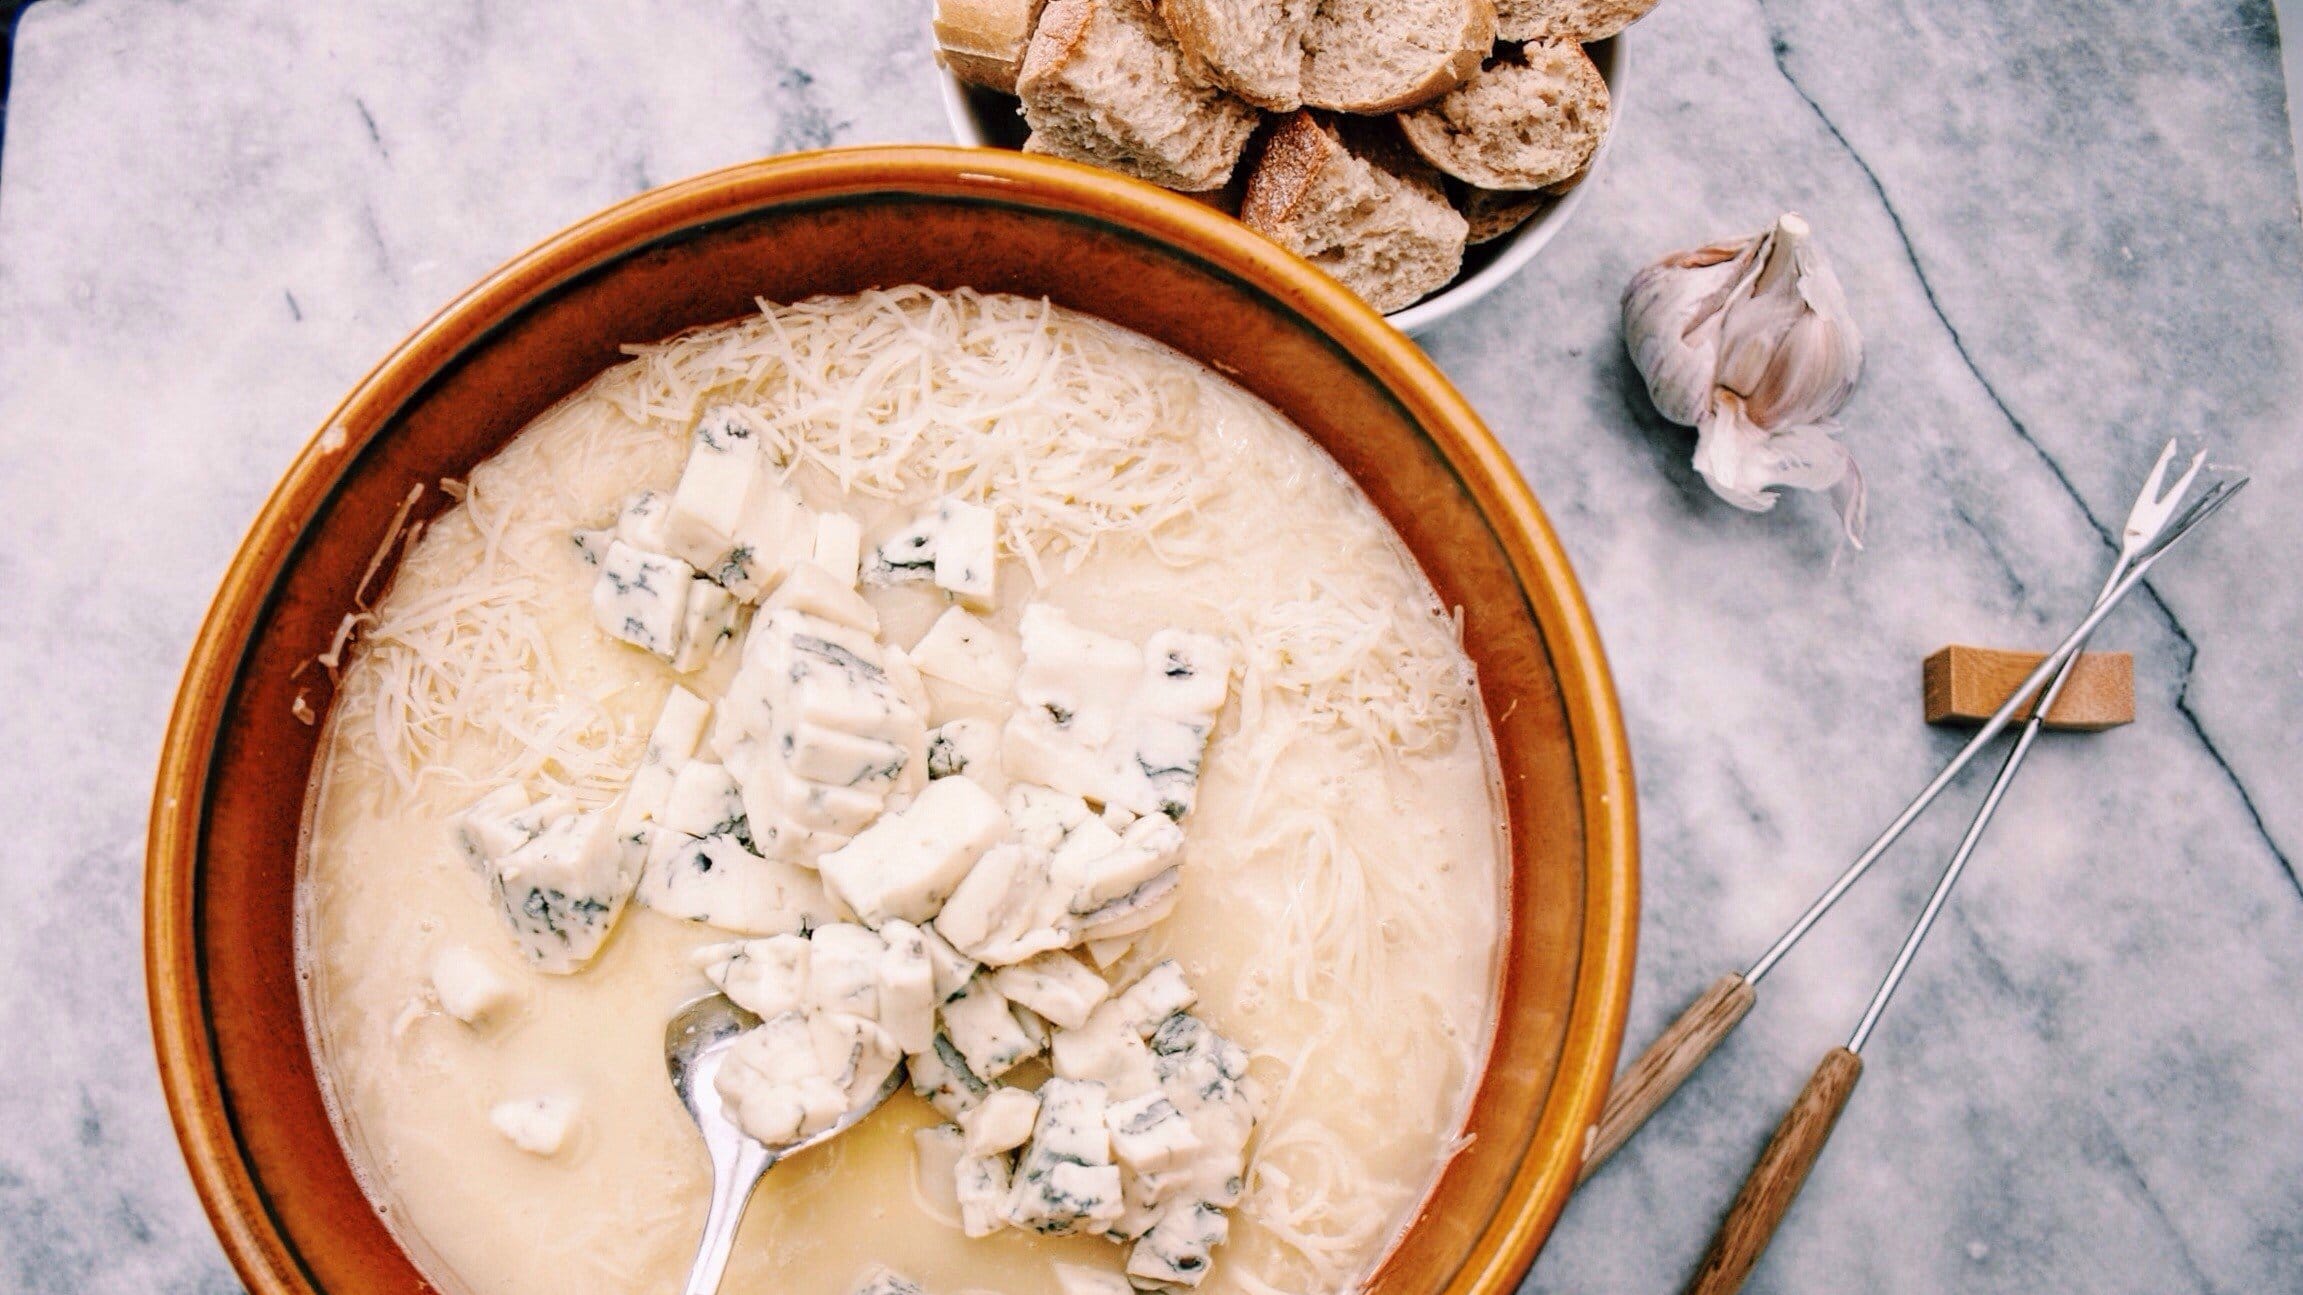 Käsefondue mit Gorgonzola im Tontopf auf Marmoruntergrund. Umgeben ist das Ganz von Brot, Knoblauch und Spießen.